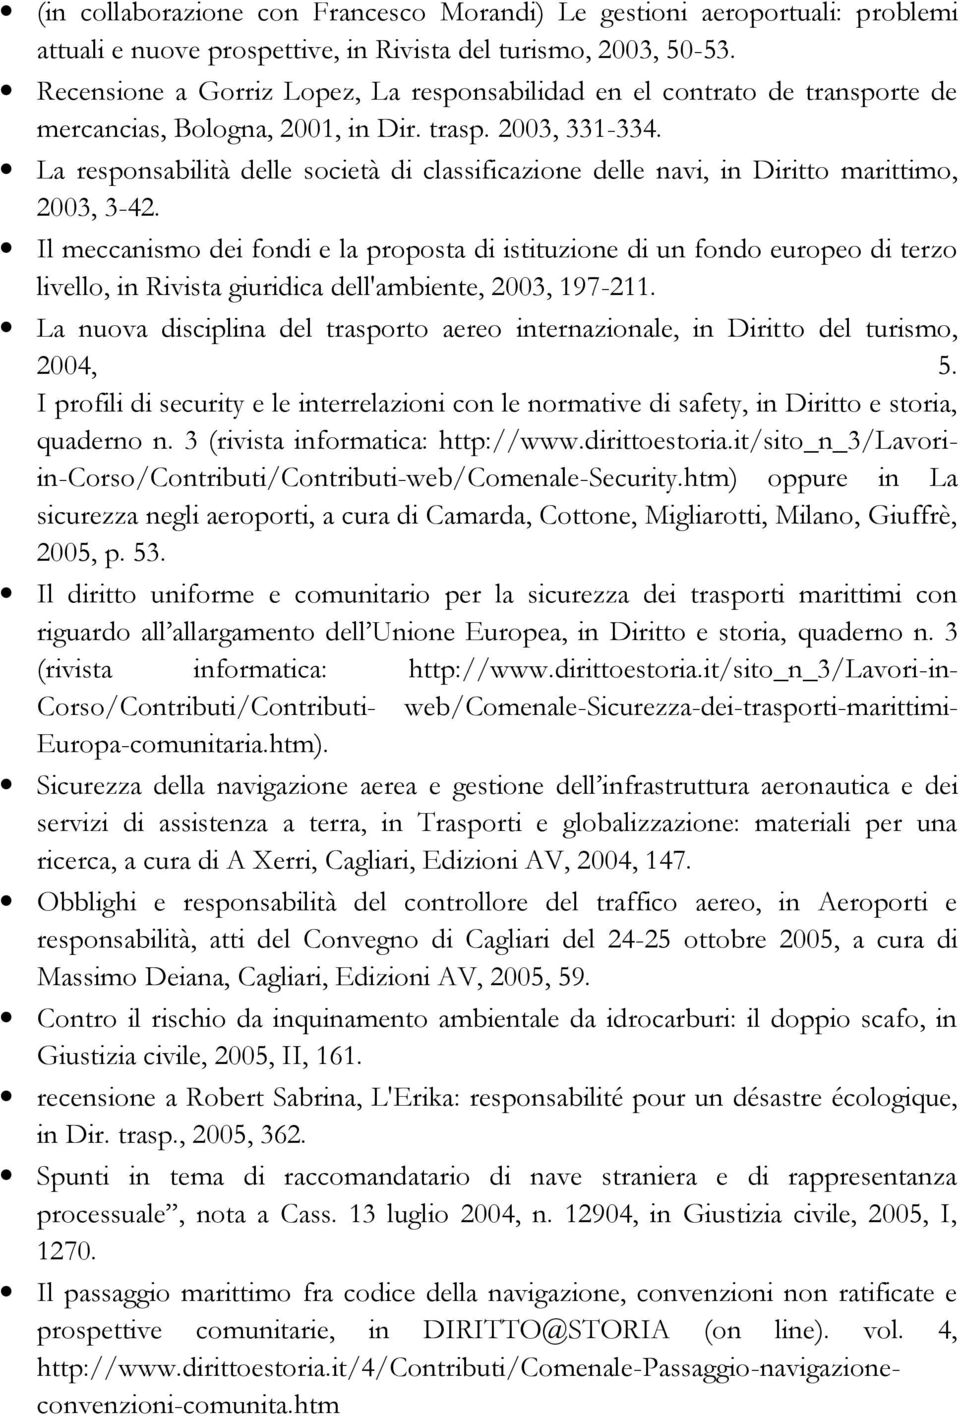 La responsabilità delle società di classificazione delle navi, in Diritto marittimo, 2003, 3-42.